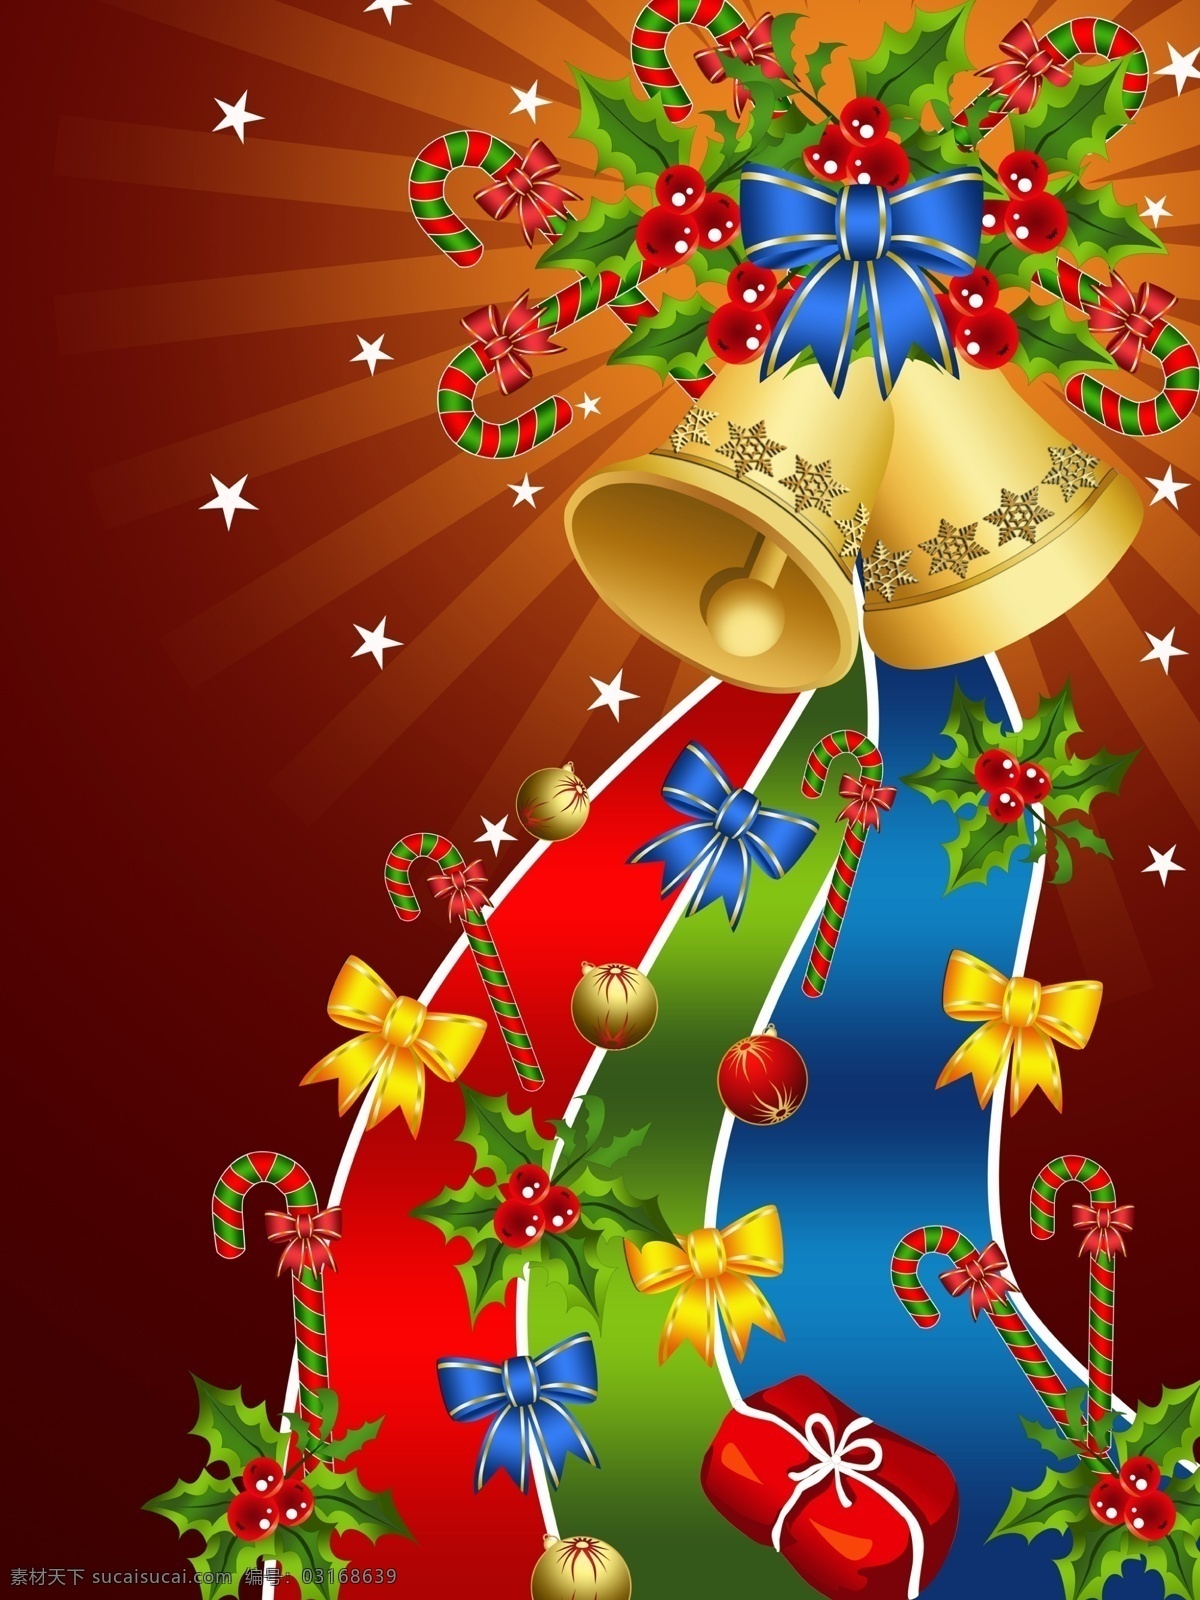 精美 绚丽 圣诞贺卡 矢量图 圣诞 吊球 节日 彩球 圣诞节 礼物 包 雪花 彩 杖 拐杖 铃铛 彩带 结 节日素材 其他节日